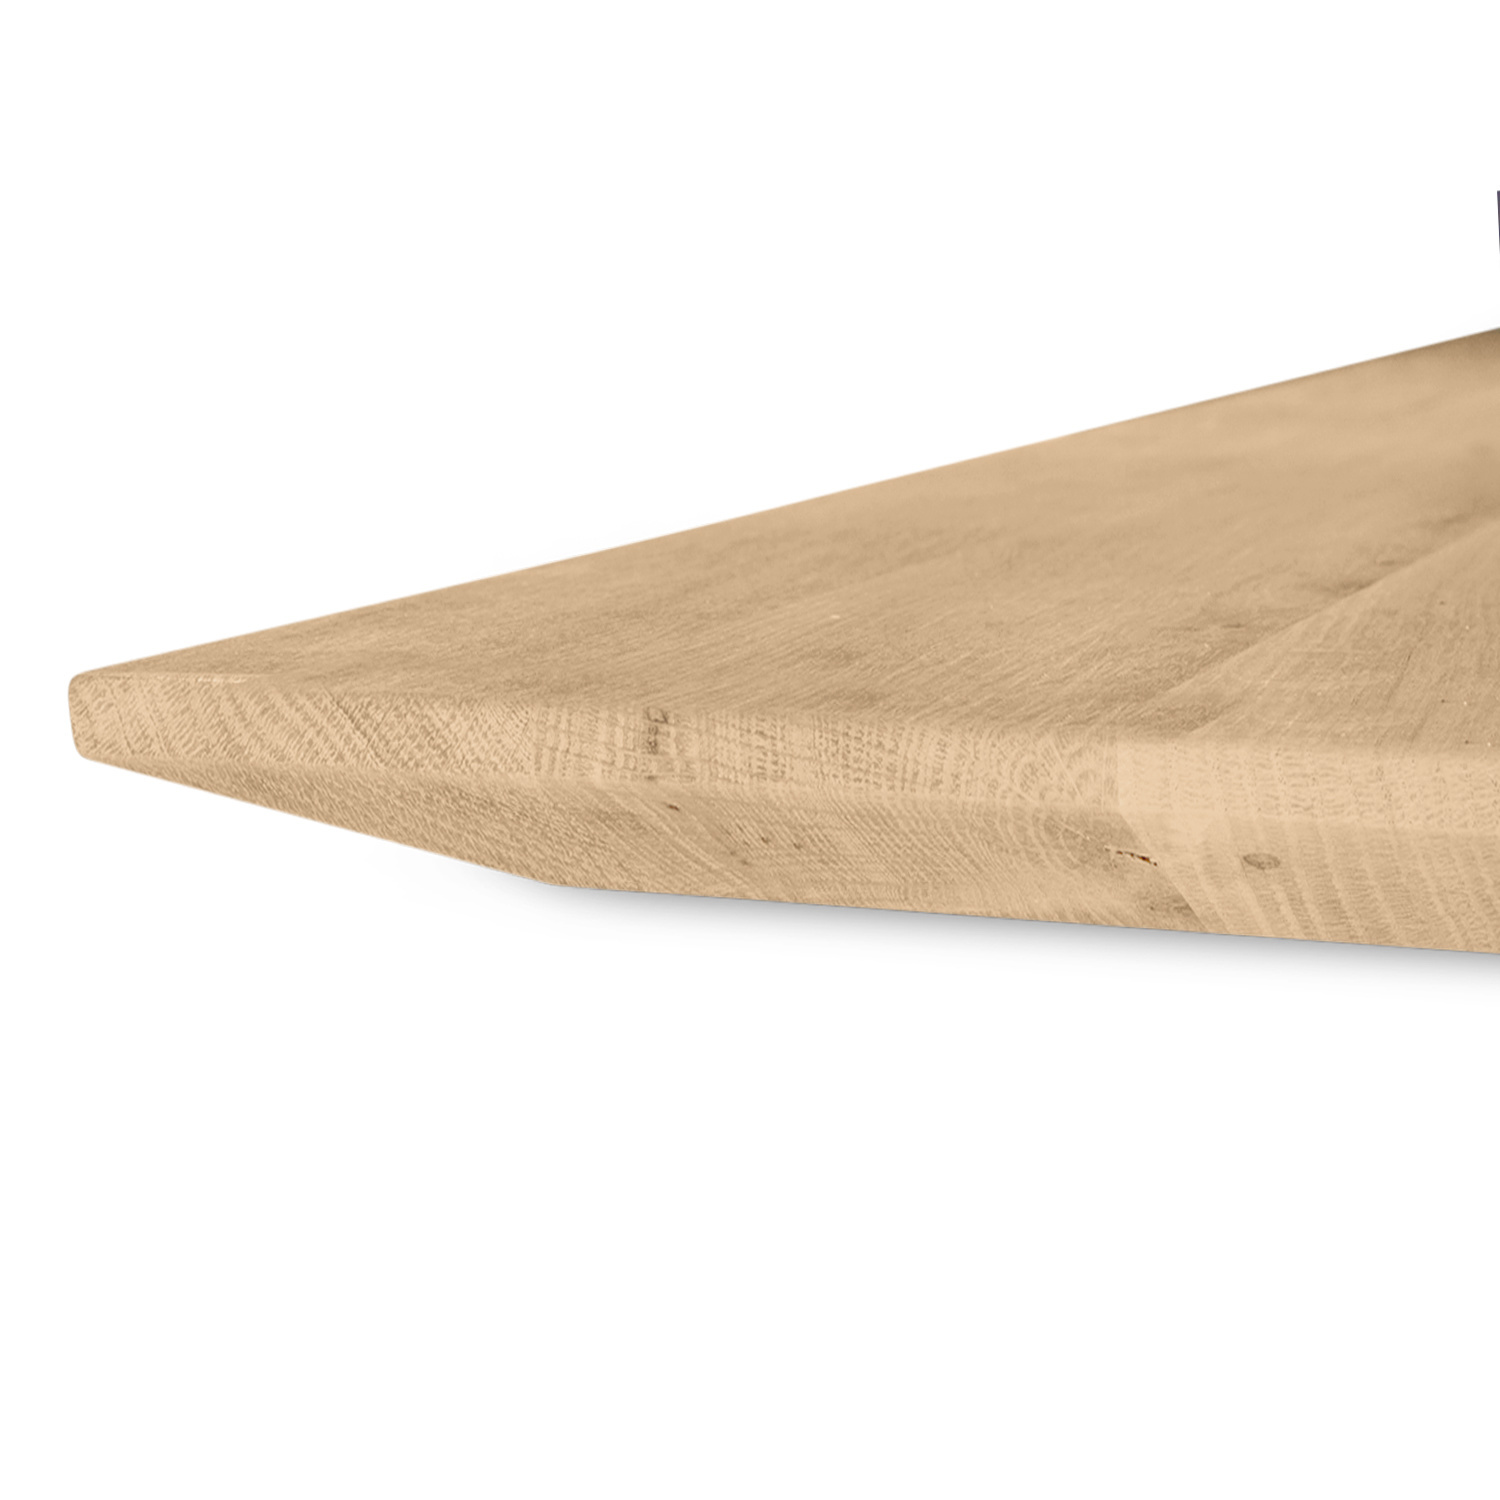  Eiken tafelblad verjongd op maat - 4 cm dik (1-laag) - foutvrij Europees eikenhout - met brede lamellen (circa 10-12 cm) - verlijmd kd 8-12% - 50-120x50-248 cm